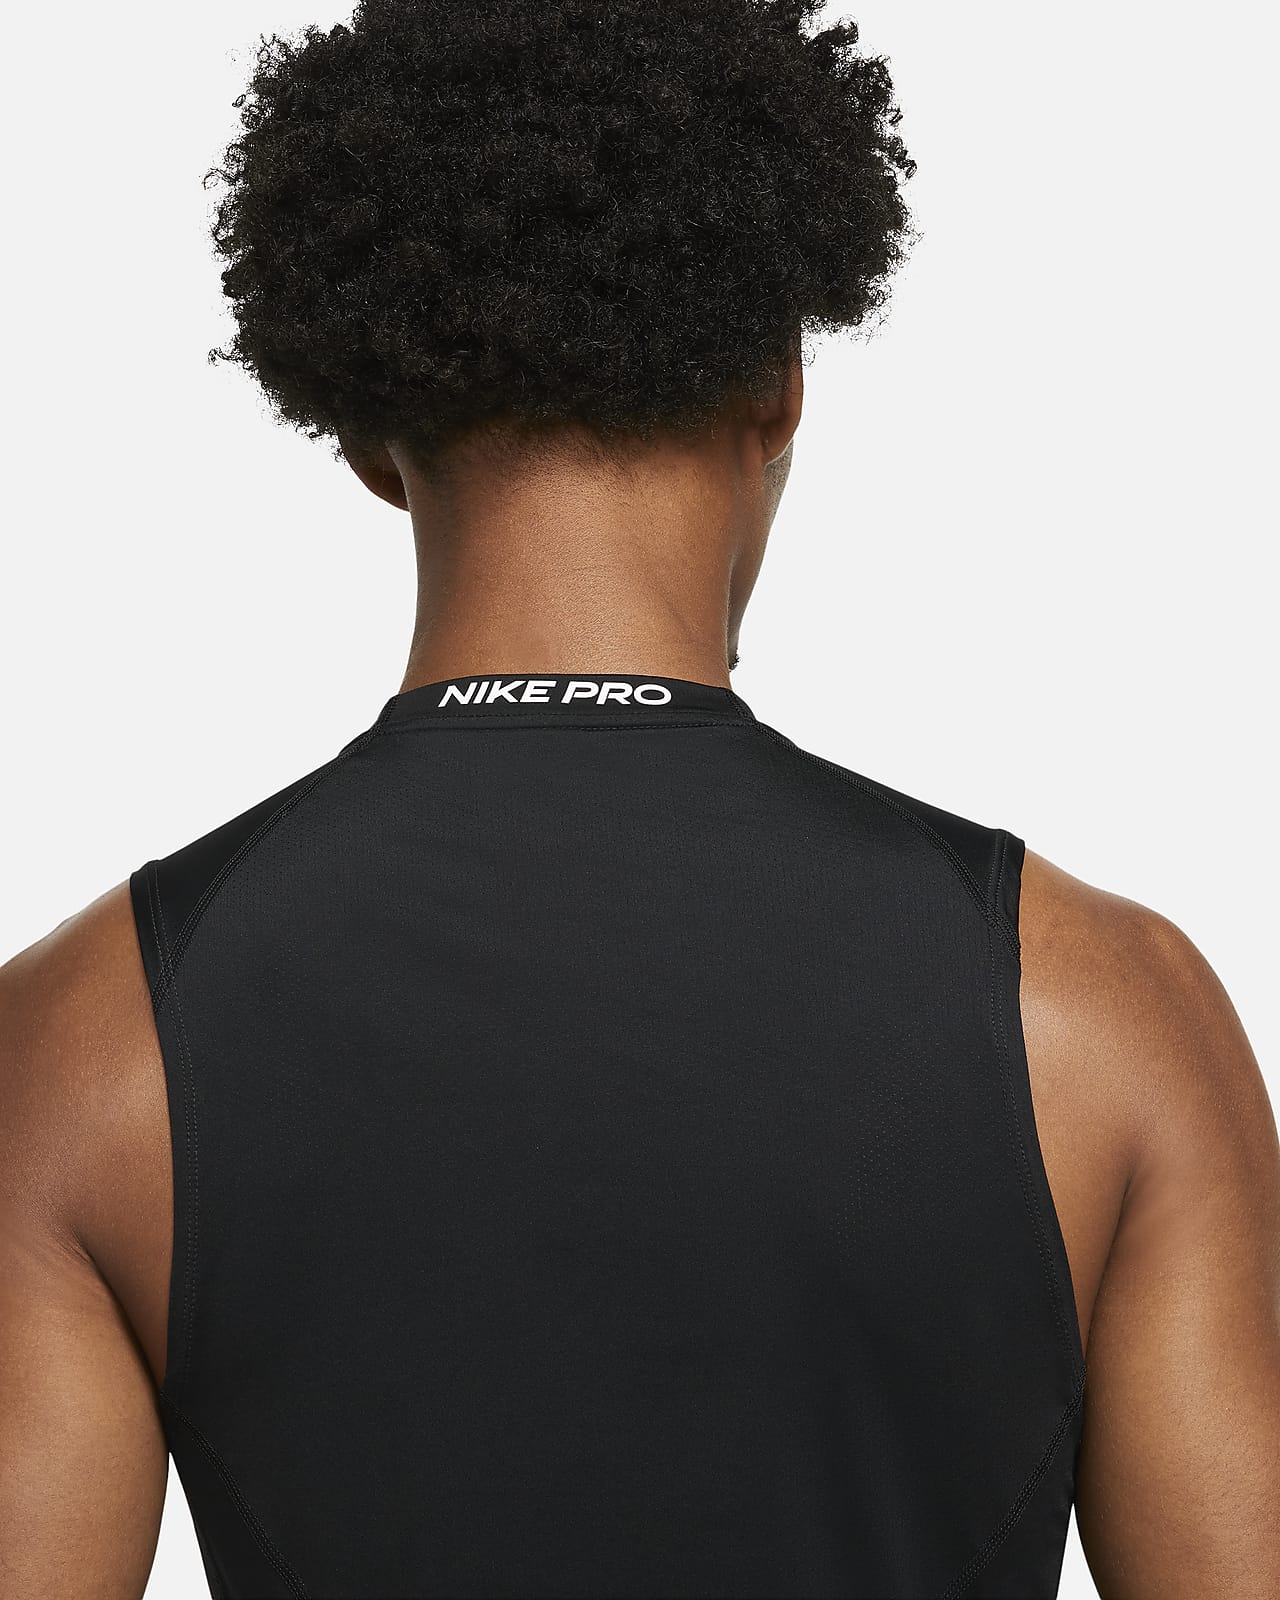 Camiseta sin y corte ajustado para hombre Nike.com